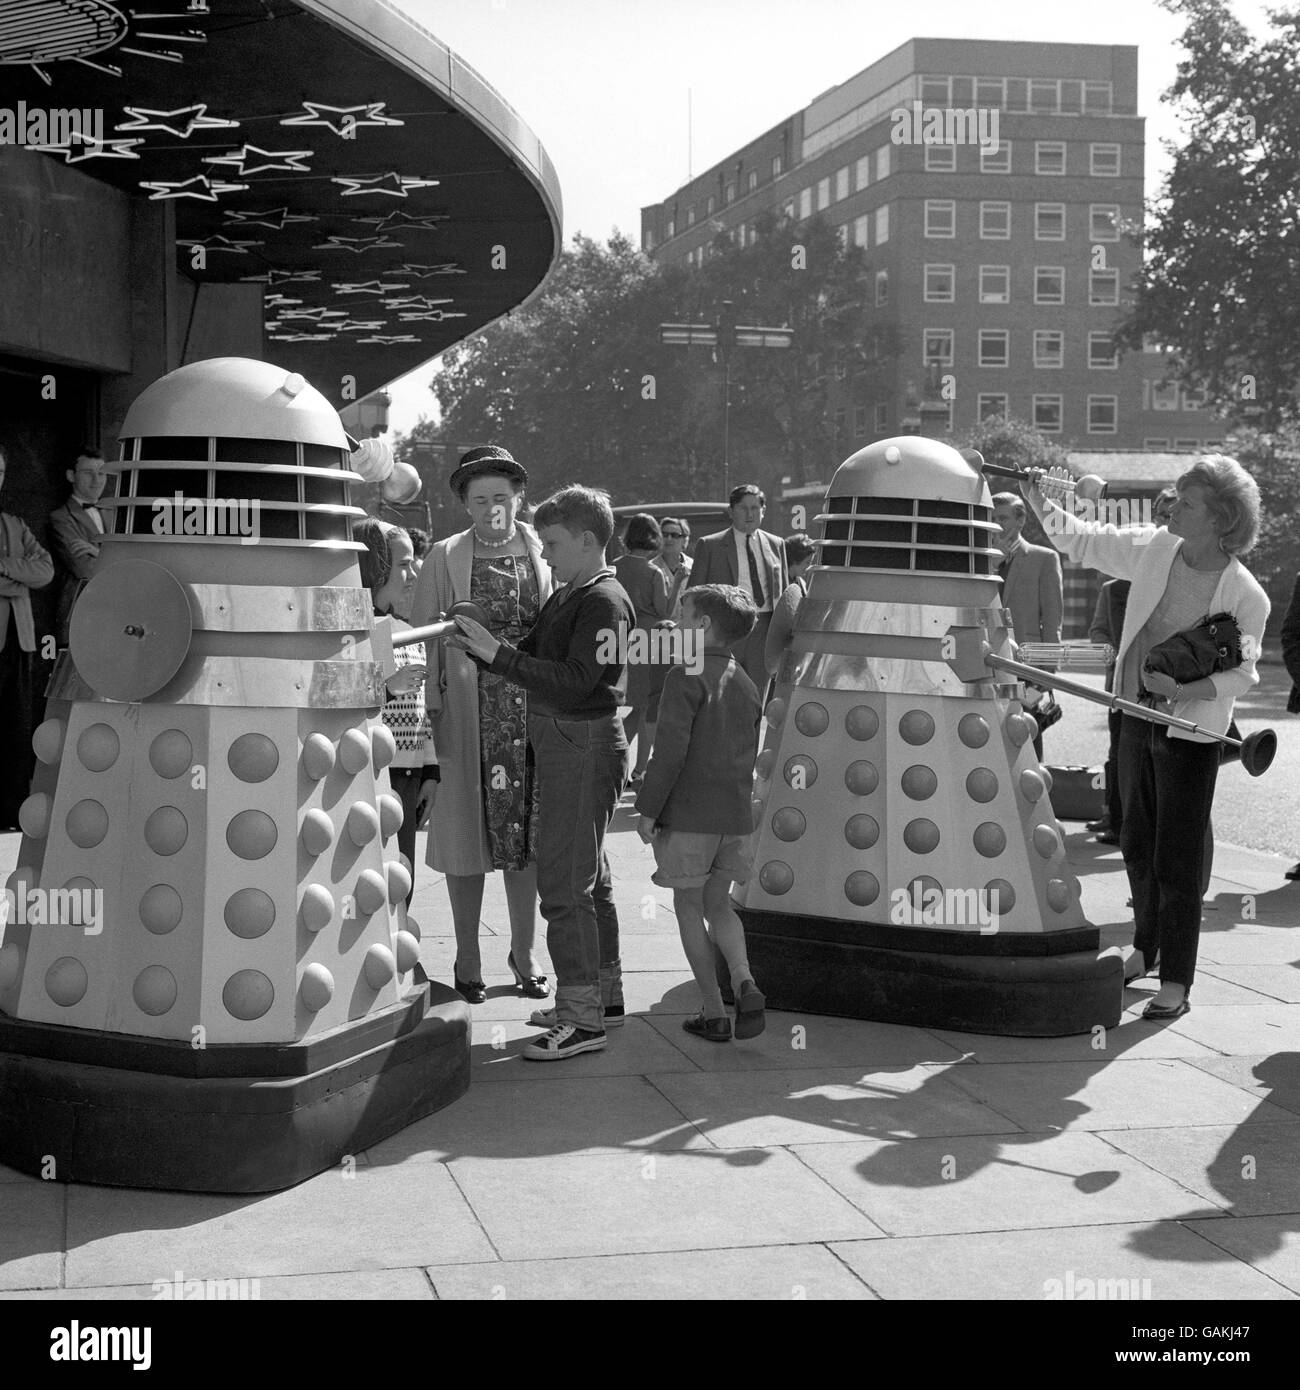 Enfants rencontrant le robot Daleks à l'extérieur du Planétarium, Baker Street, pendant le tournage de lieu pour une nouvelle série. Banque D'Images